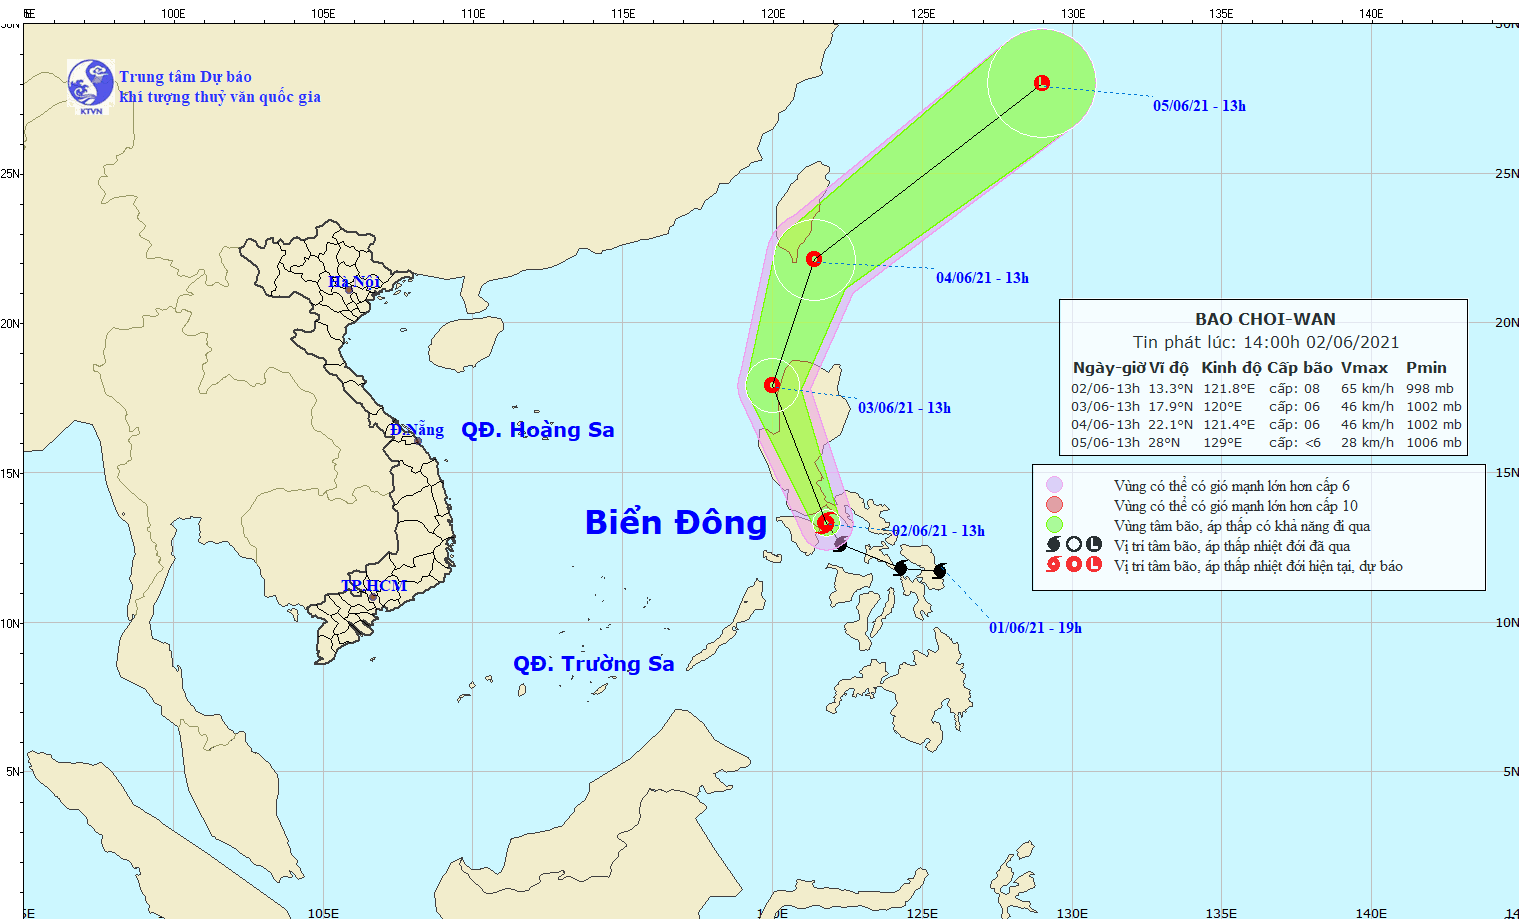 Dự báo đường đi và vùng ảnh hưởng của bão Choi - wan.